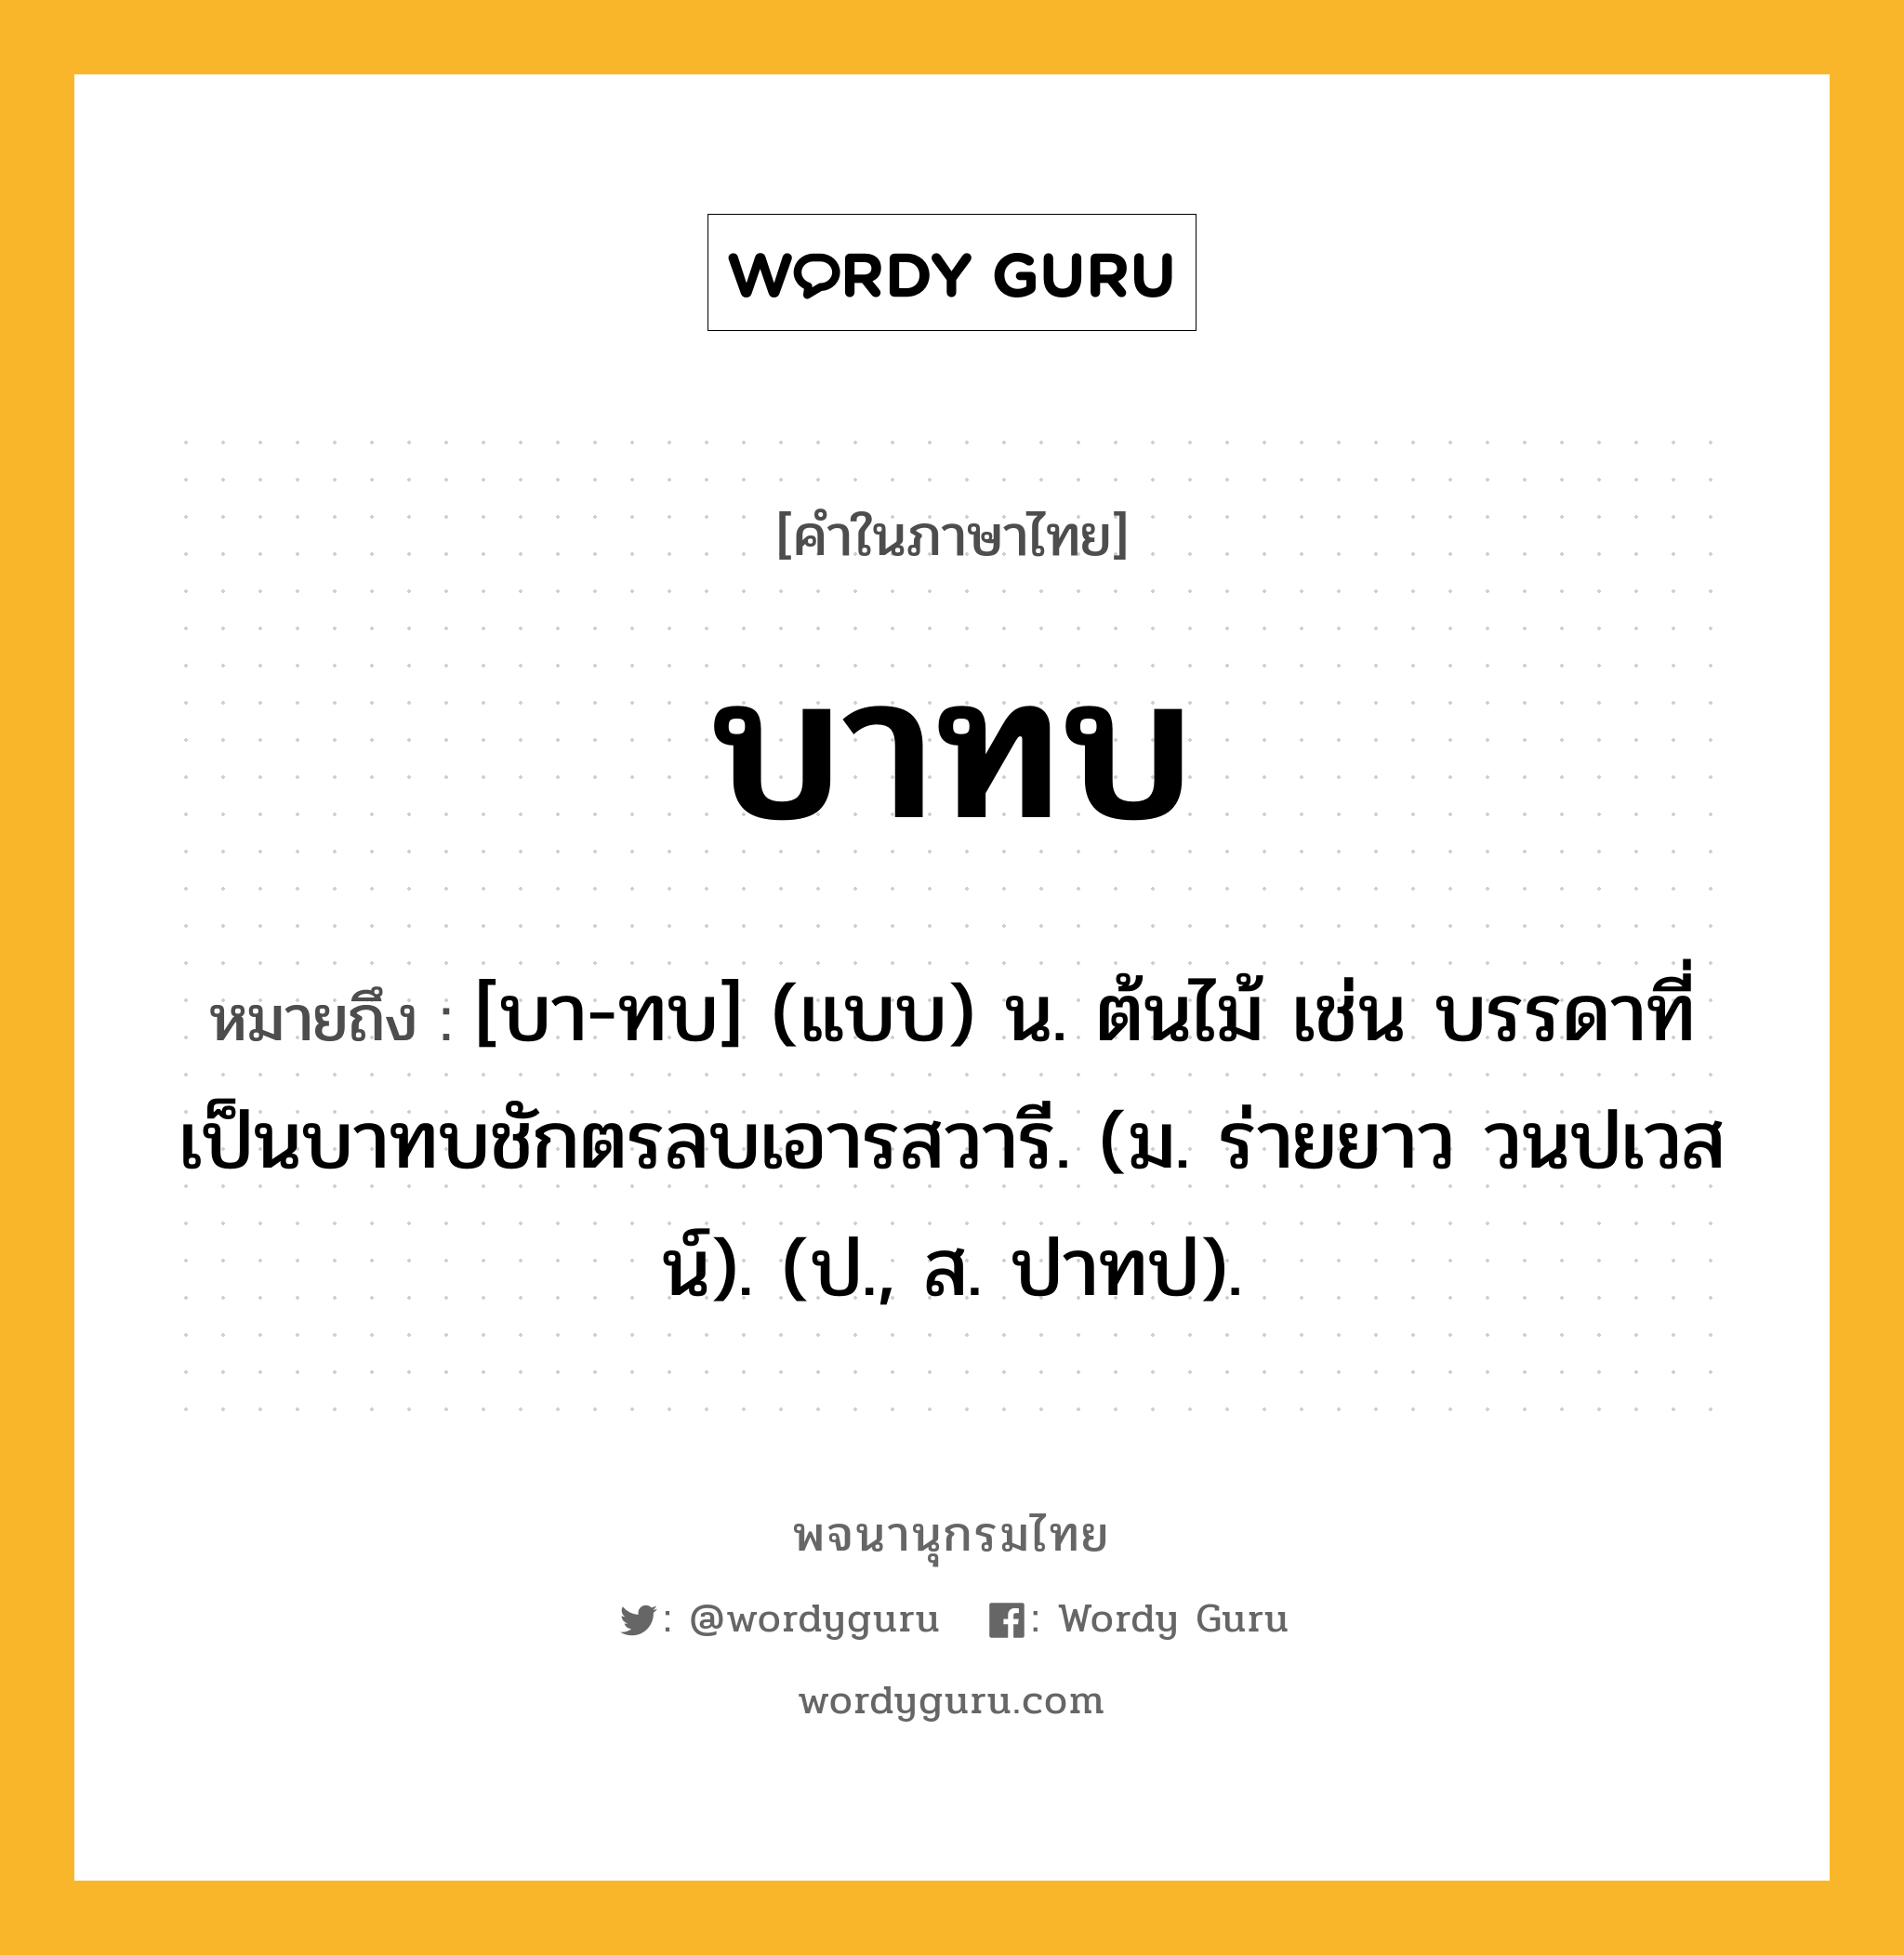 บาทบ ความหมาย หมายถึงอะไร?, คำในภาษาไทย บาทบ หมายถึง [บา-ทบ] (แบบ) น. ต้นไม้ เช่น บรรดาที่เป็นบาทบชักตรลบเอารสวารี. (ม. ร่ายยาว วนปเวสน์). (ป., ส. ปาทป).